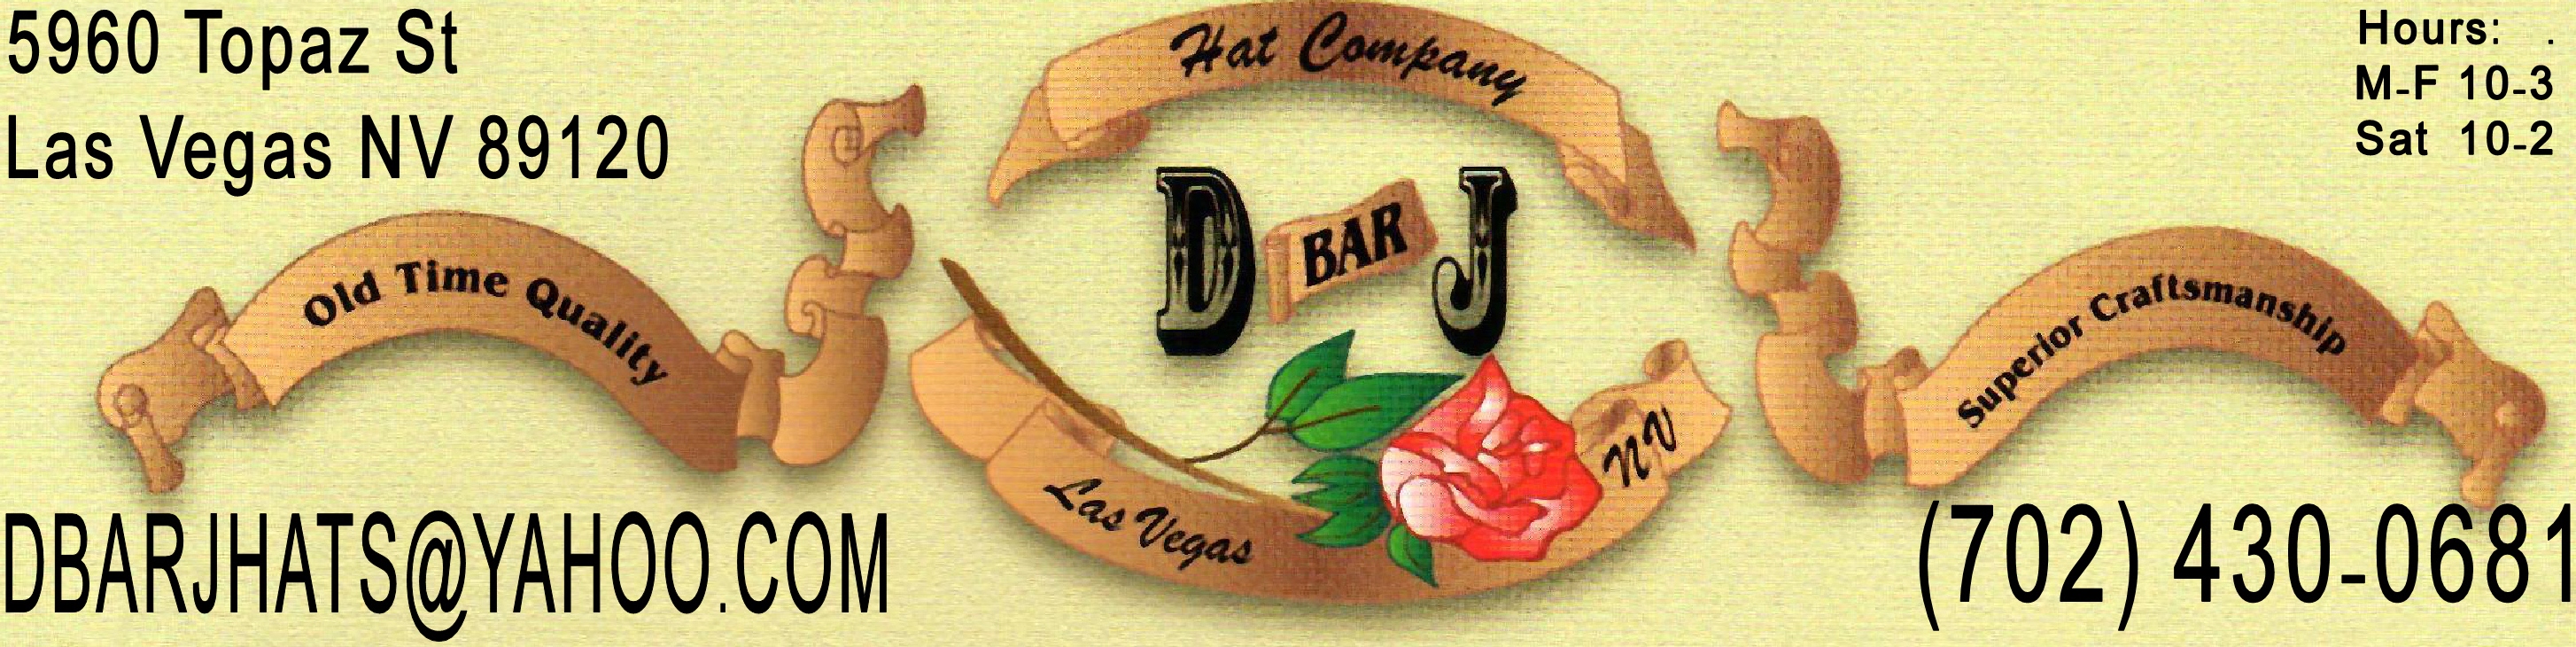 D bar J Hat Co